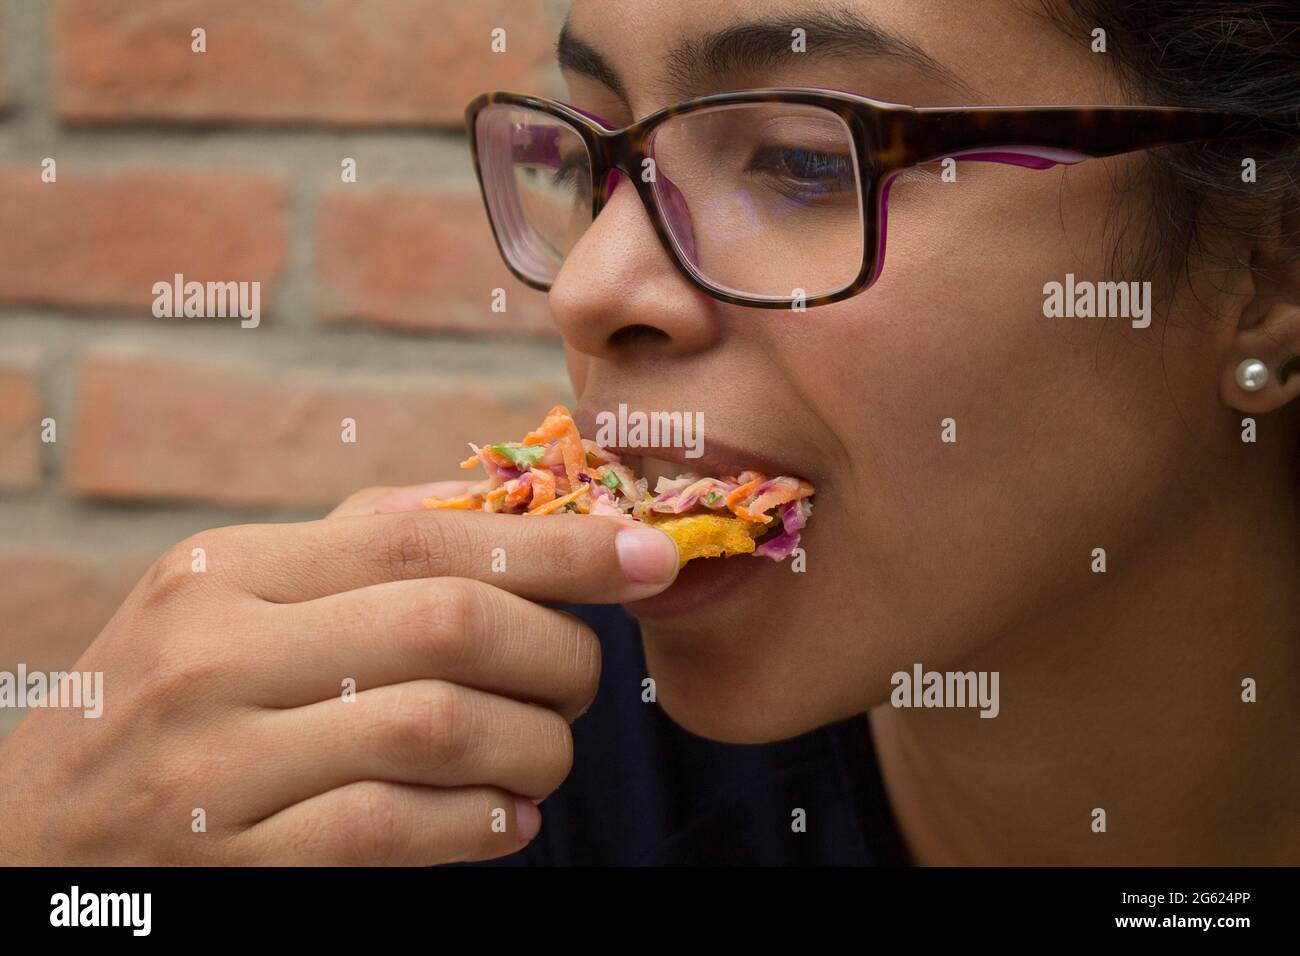 Una chica latina come Tostones con ensalada de zanahoria rallada, col, lechuga, mayonesa. Los patacones son típicos de la gastronomía del Caribe Foto de stock